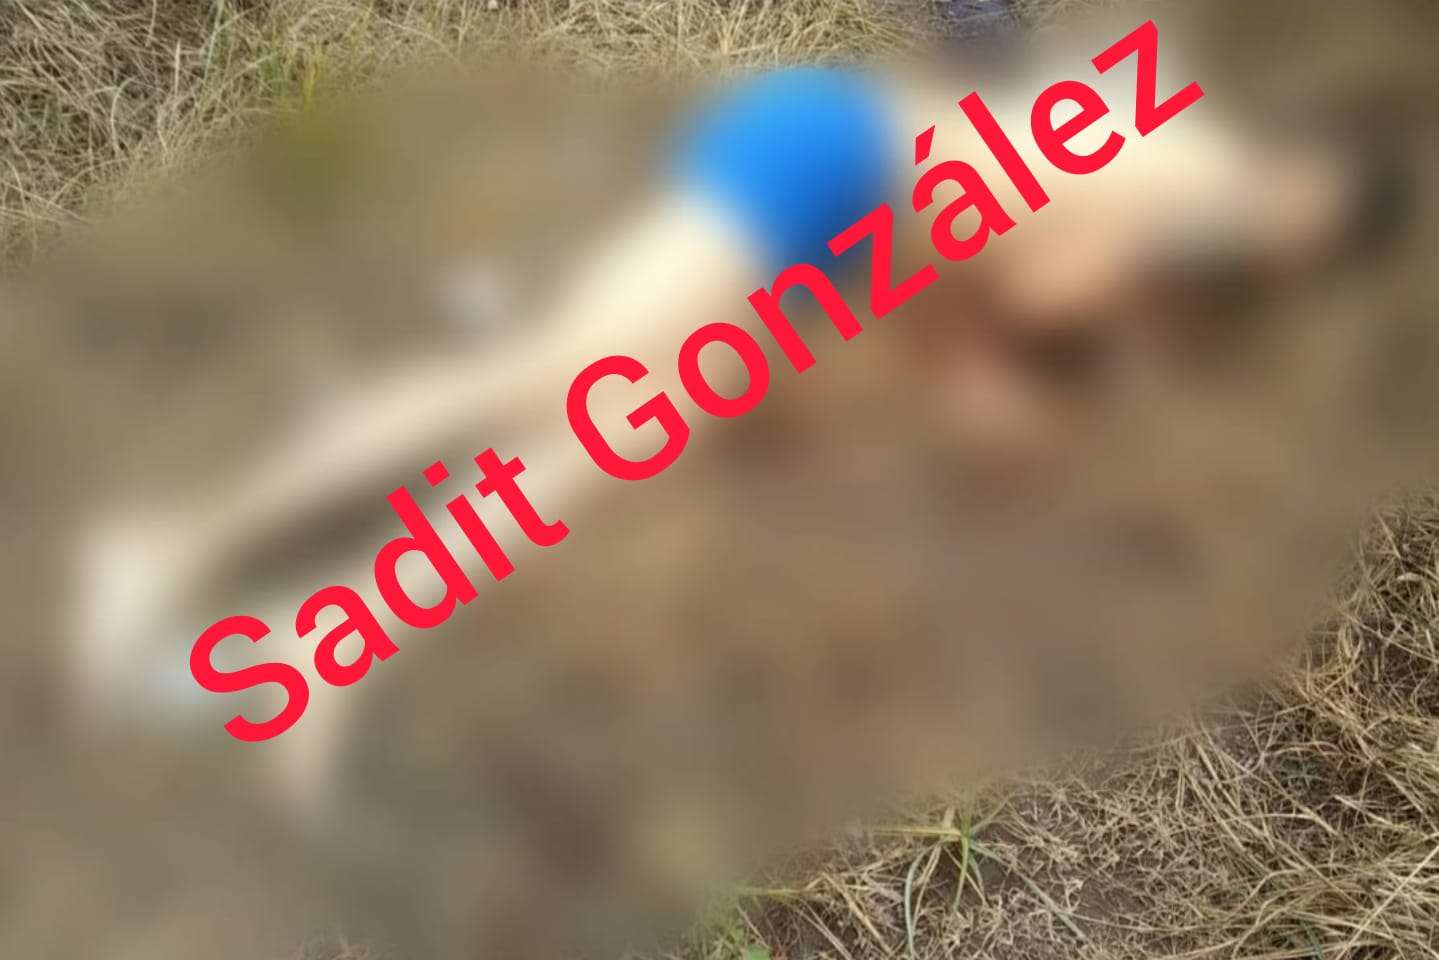 Maniatado y con huellas de violencia hallan cadáver en Tecamachalco